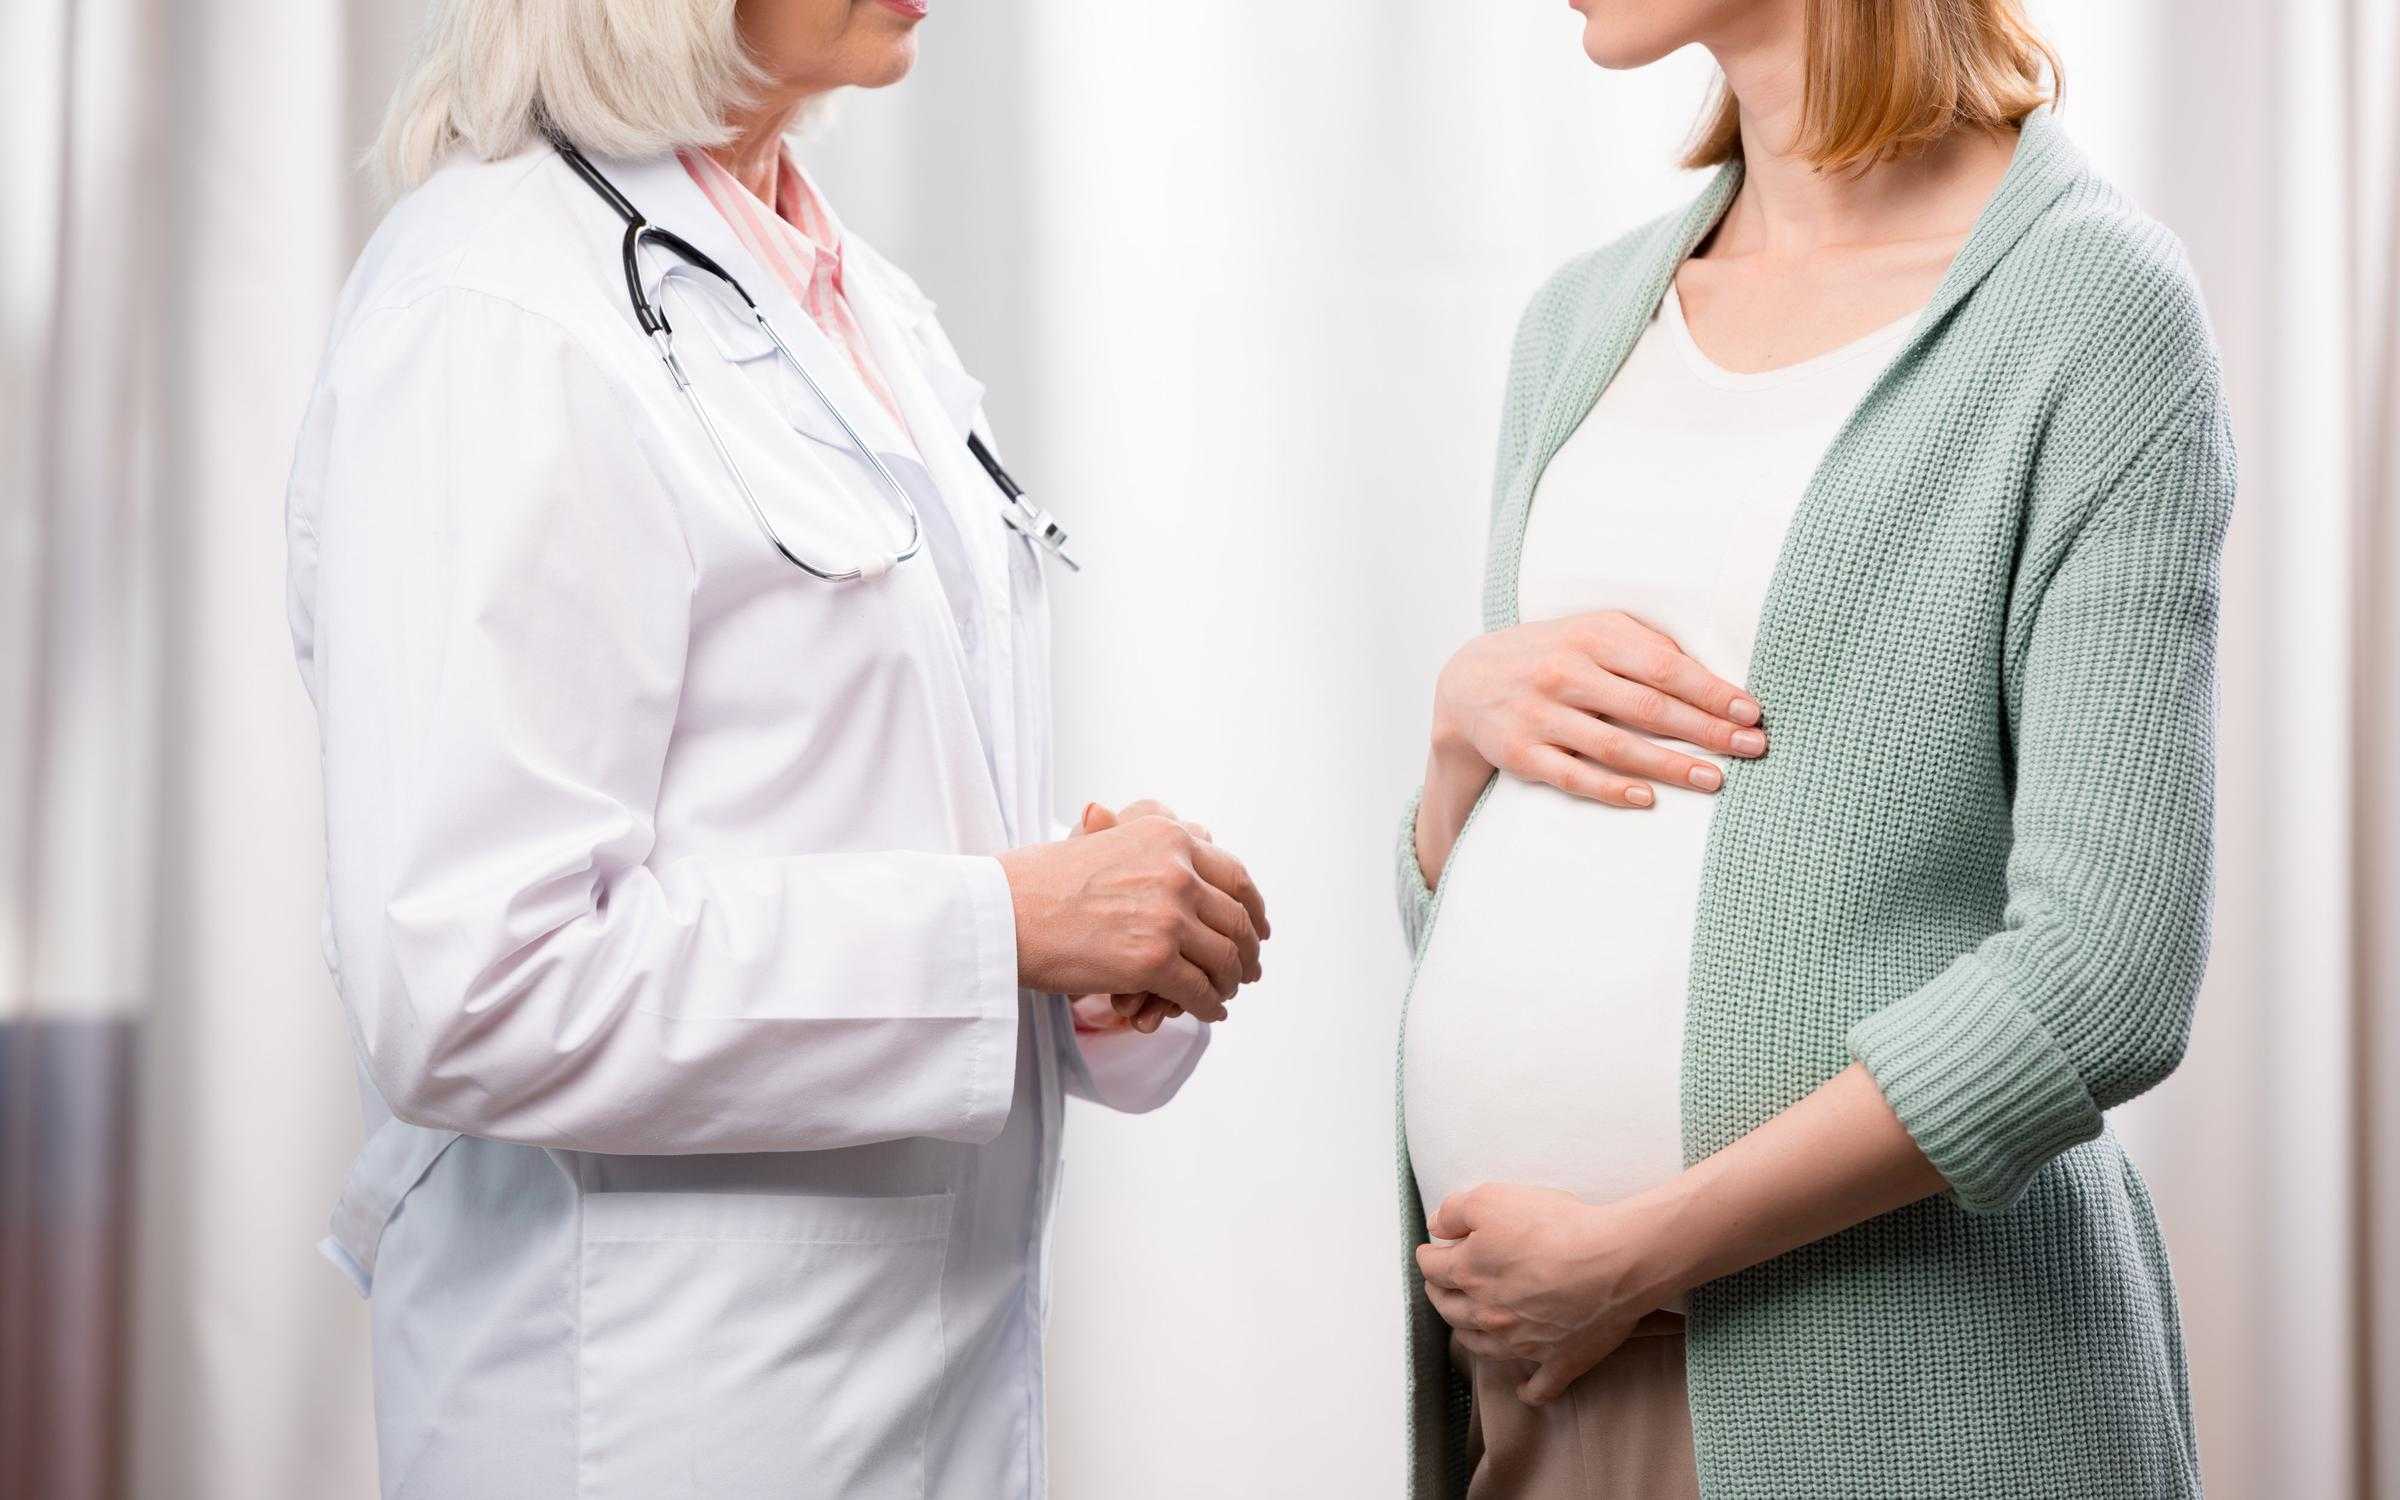 Когда начинает толкаться ребенок при беременности? сроки толчков в животе при первой беременности, когда начинает переворачиваться